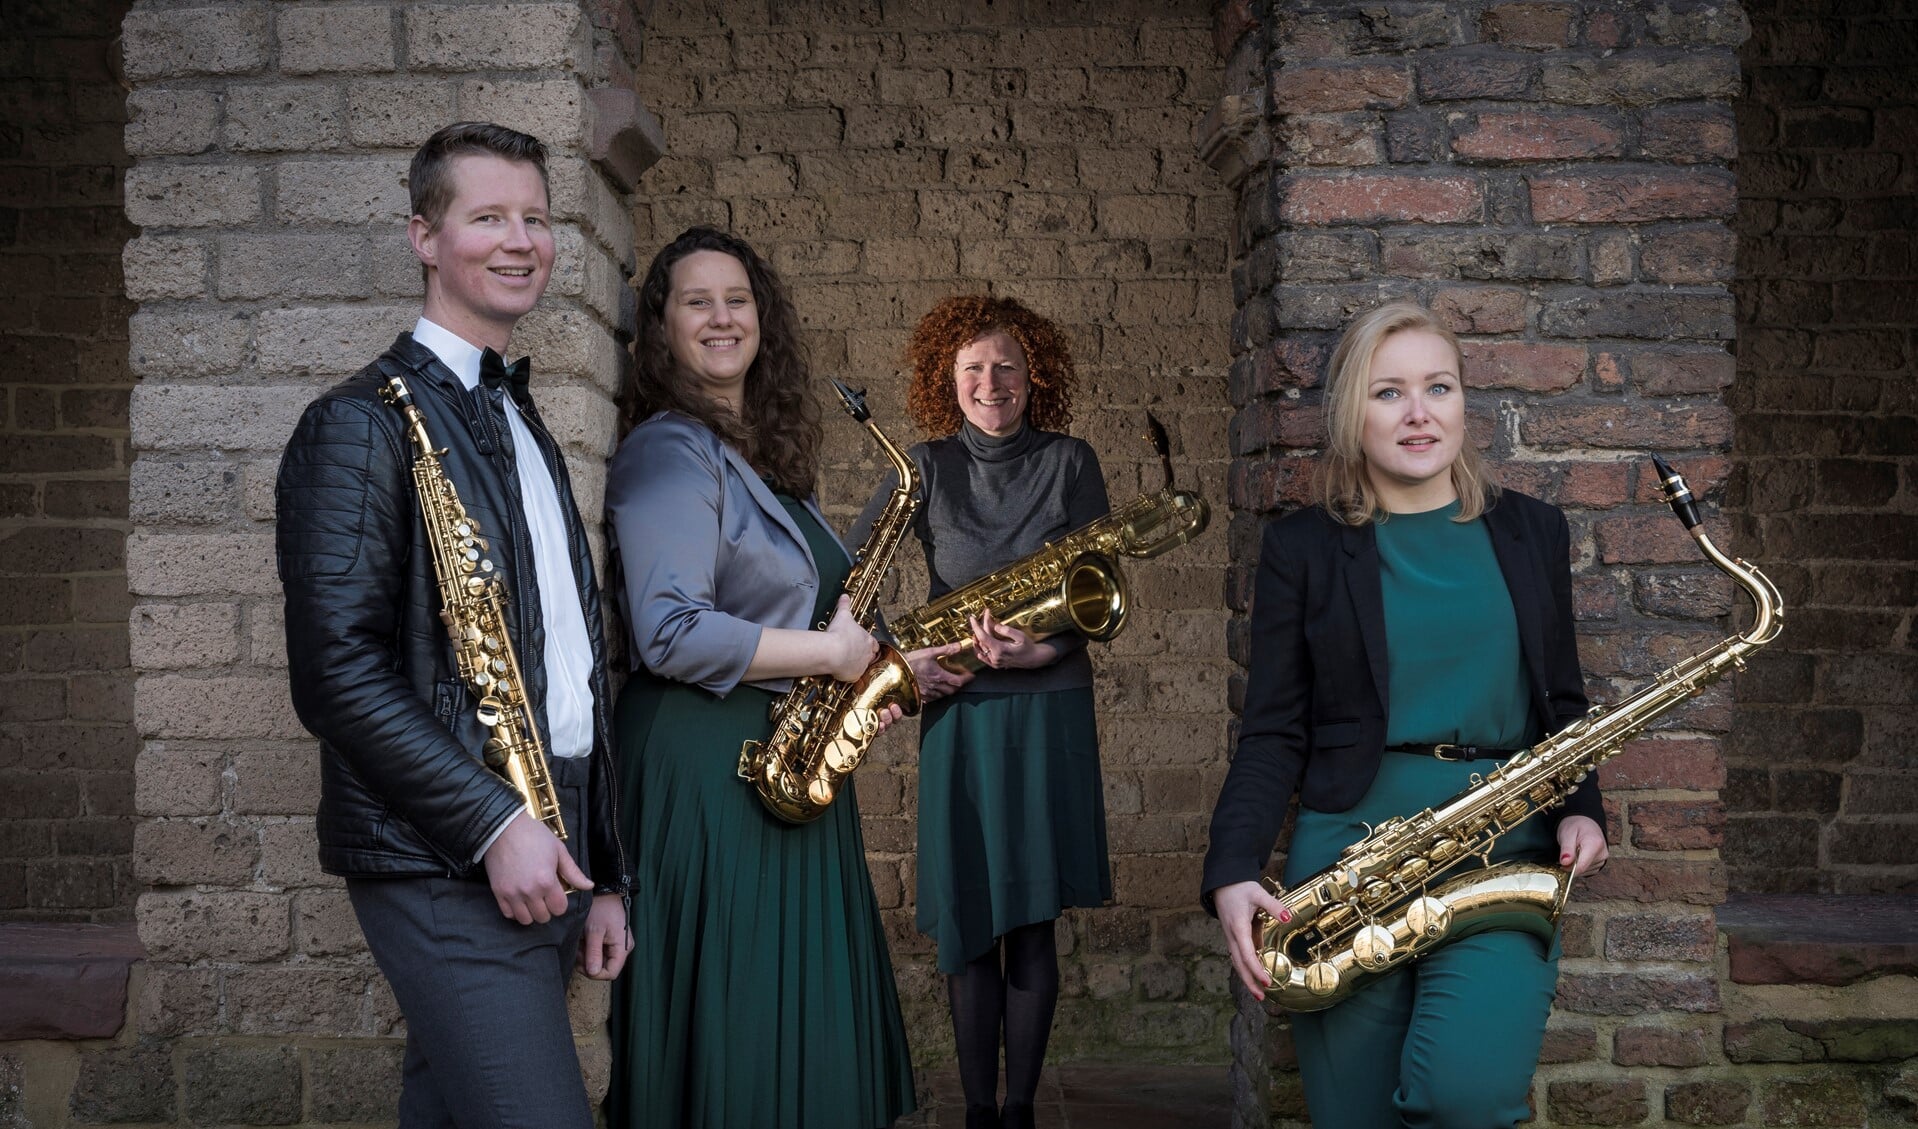 Het Artex Quartet bestaat uit vier saxofoons bespeeld door v.l.n.r. Christiaan, Els, Nina en Miriam.